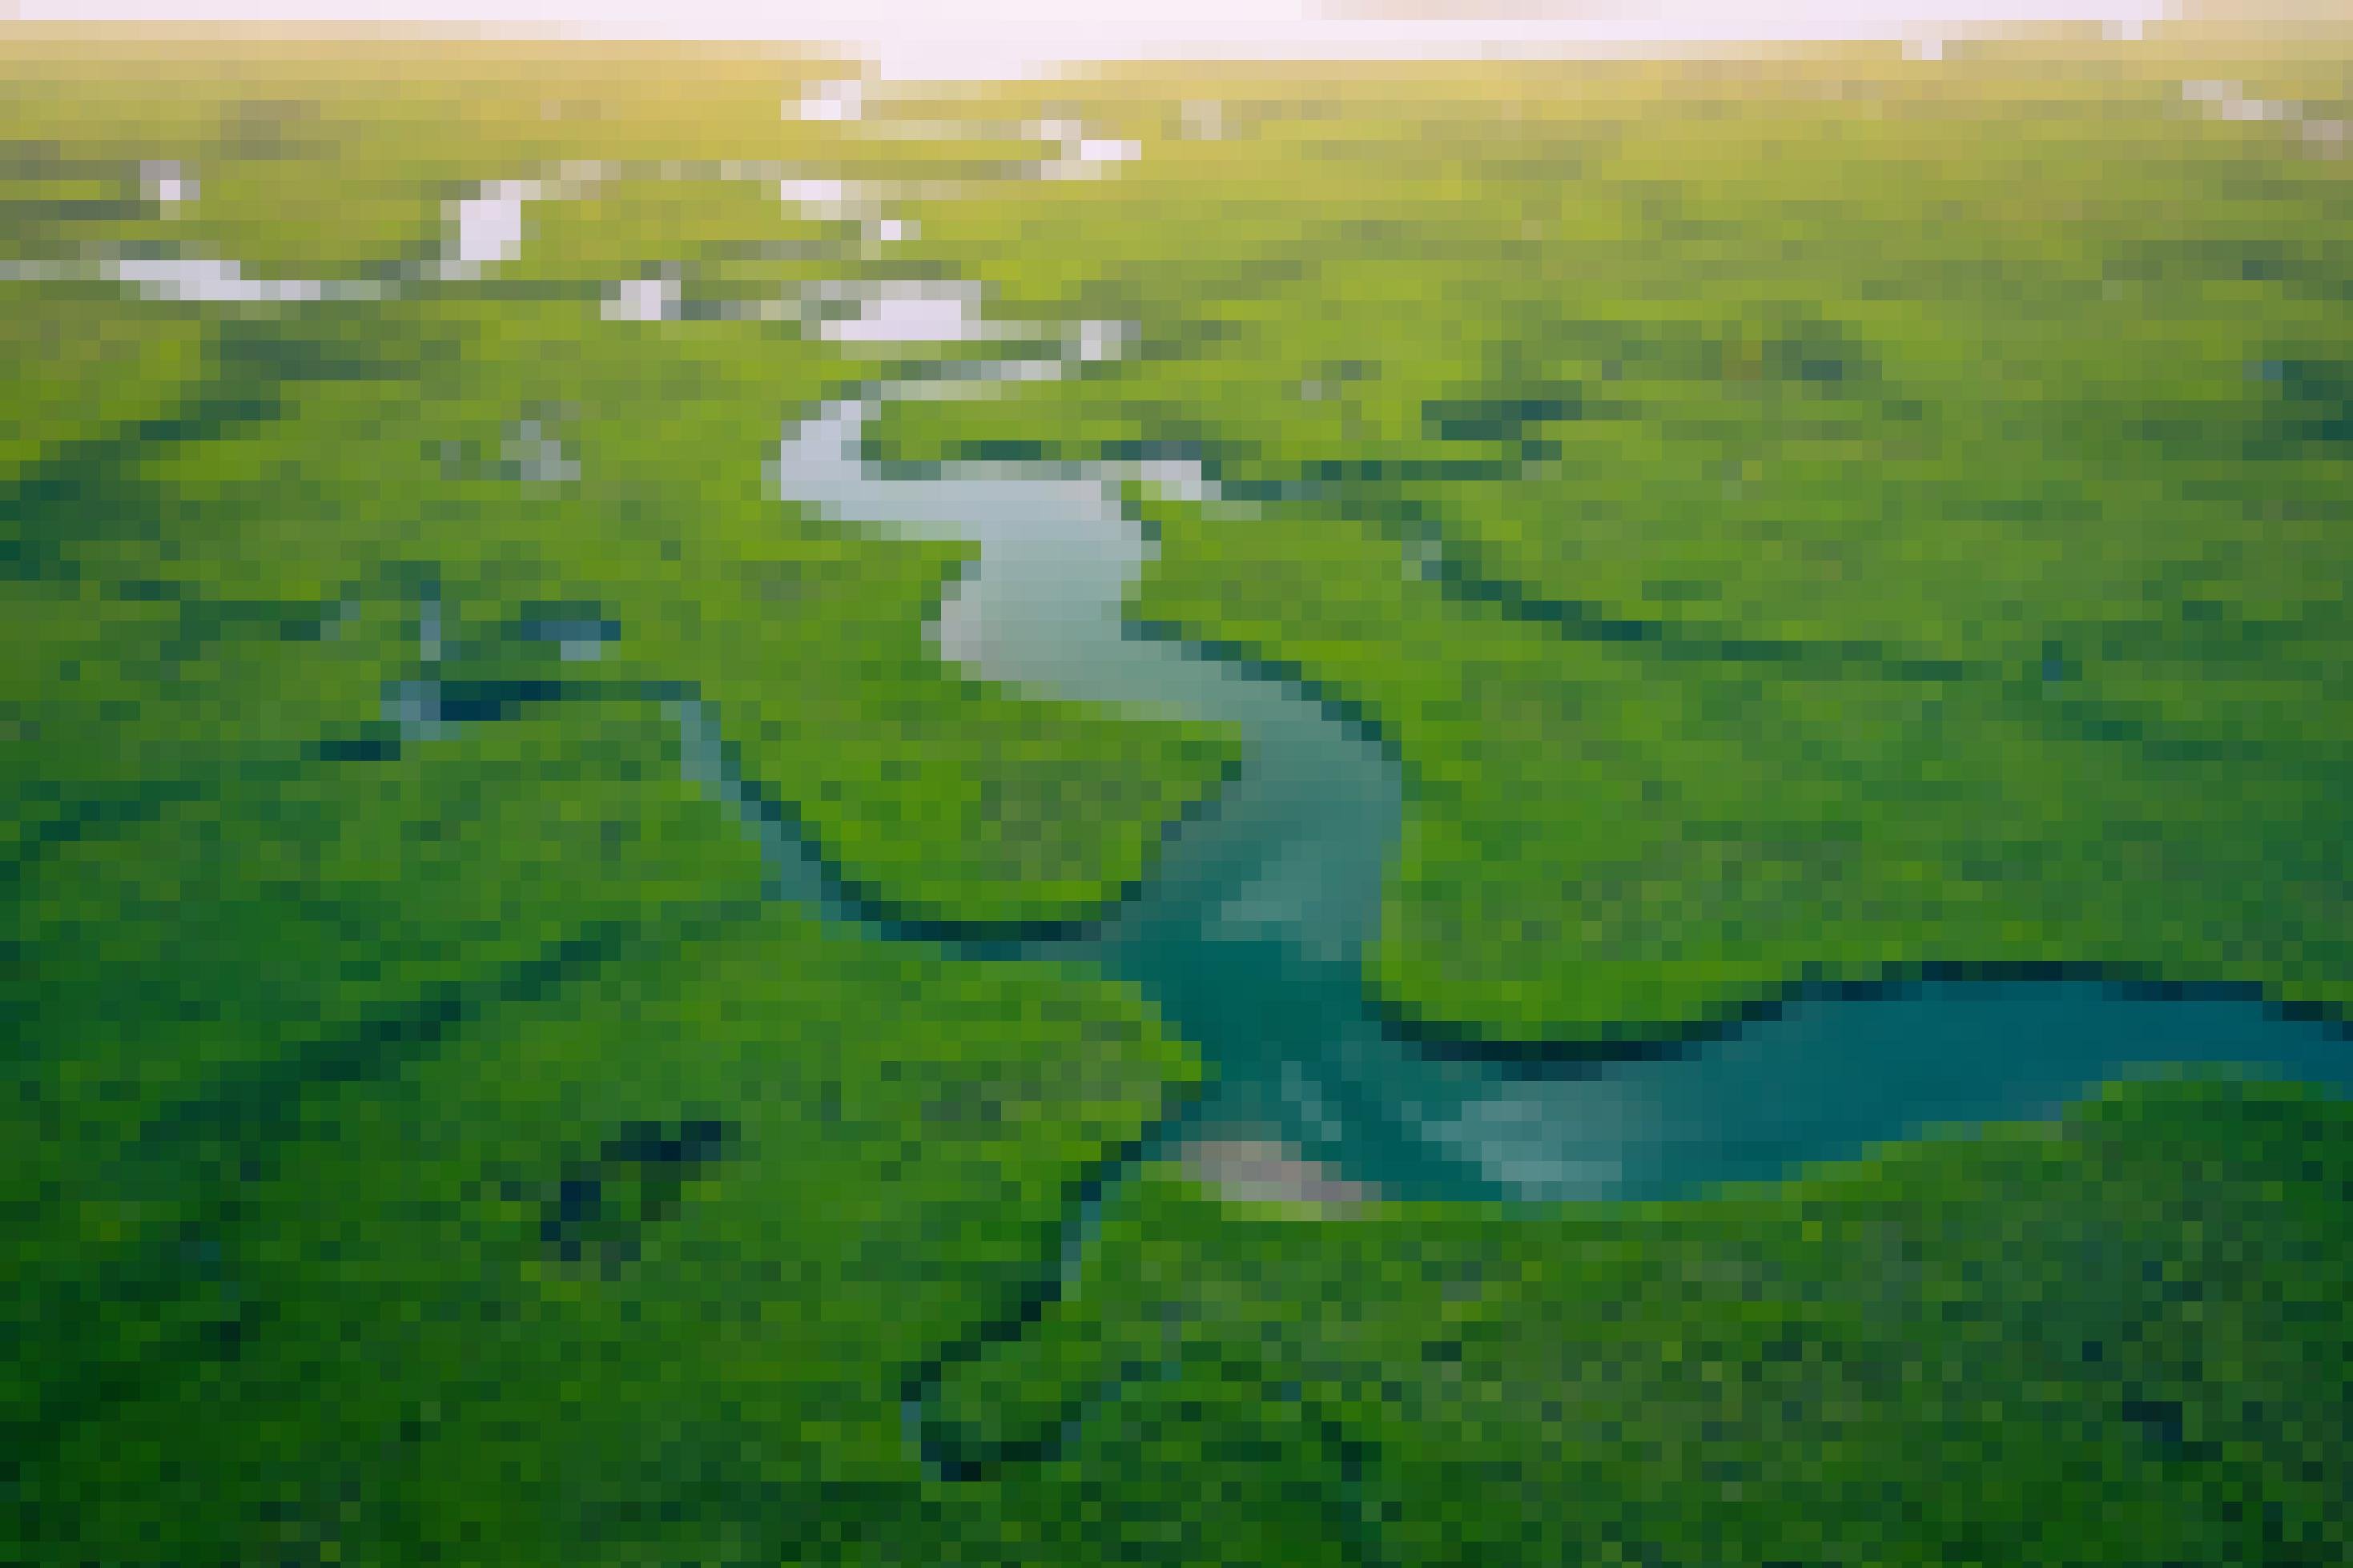 Ein Mangrovenwald in Gambia, aus der Luft gesehen. Man sieht das dichte Grün der Mangroven und einen Fluss, der sich hindurch schlängelt.